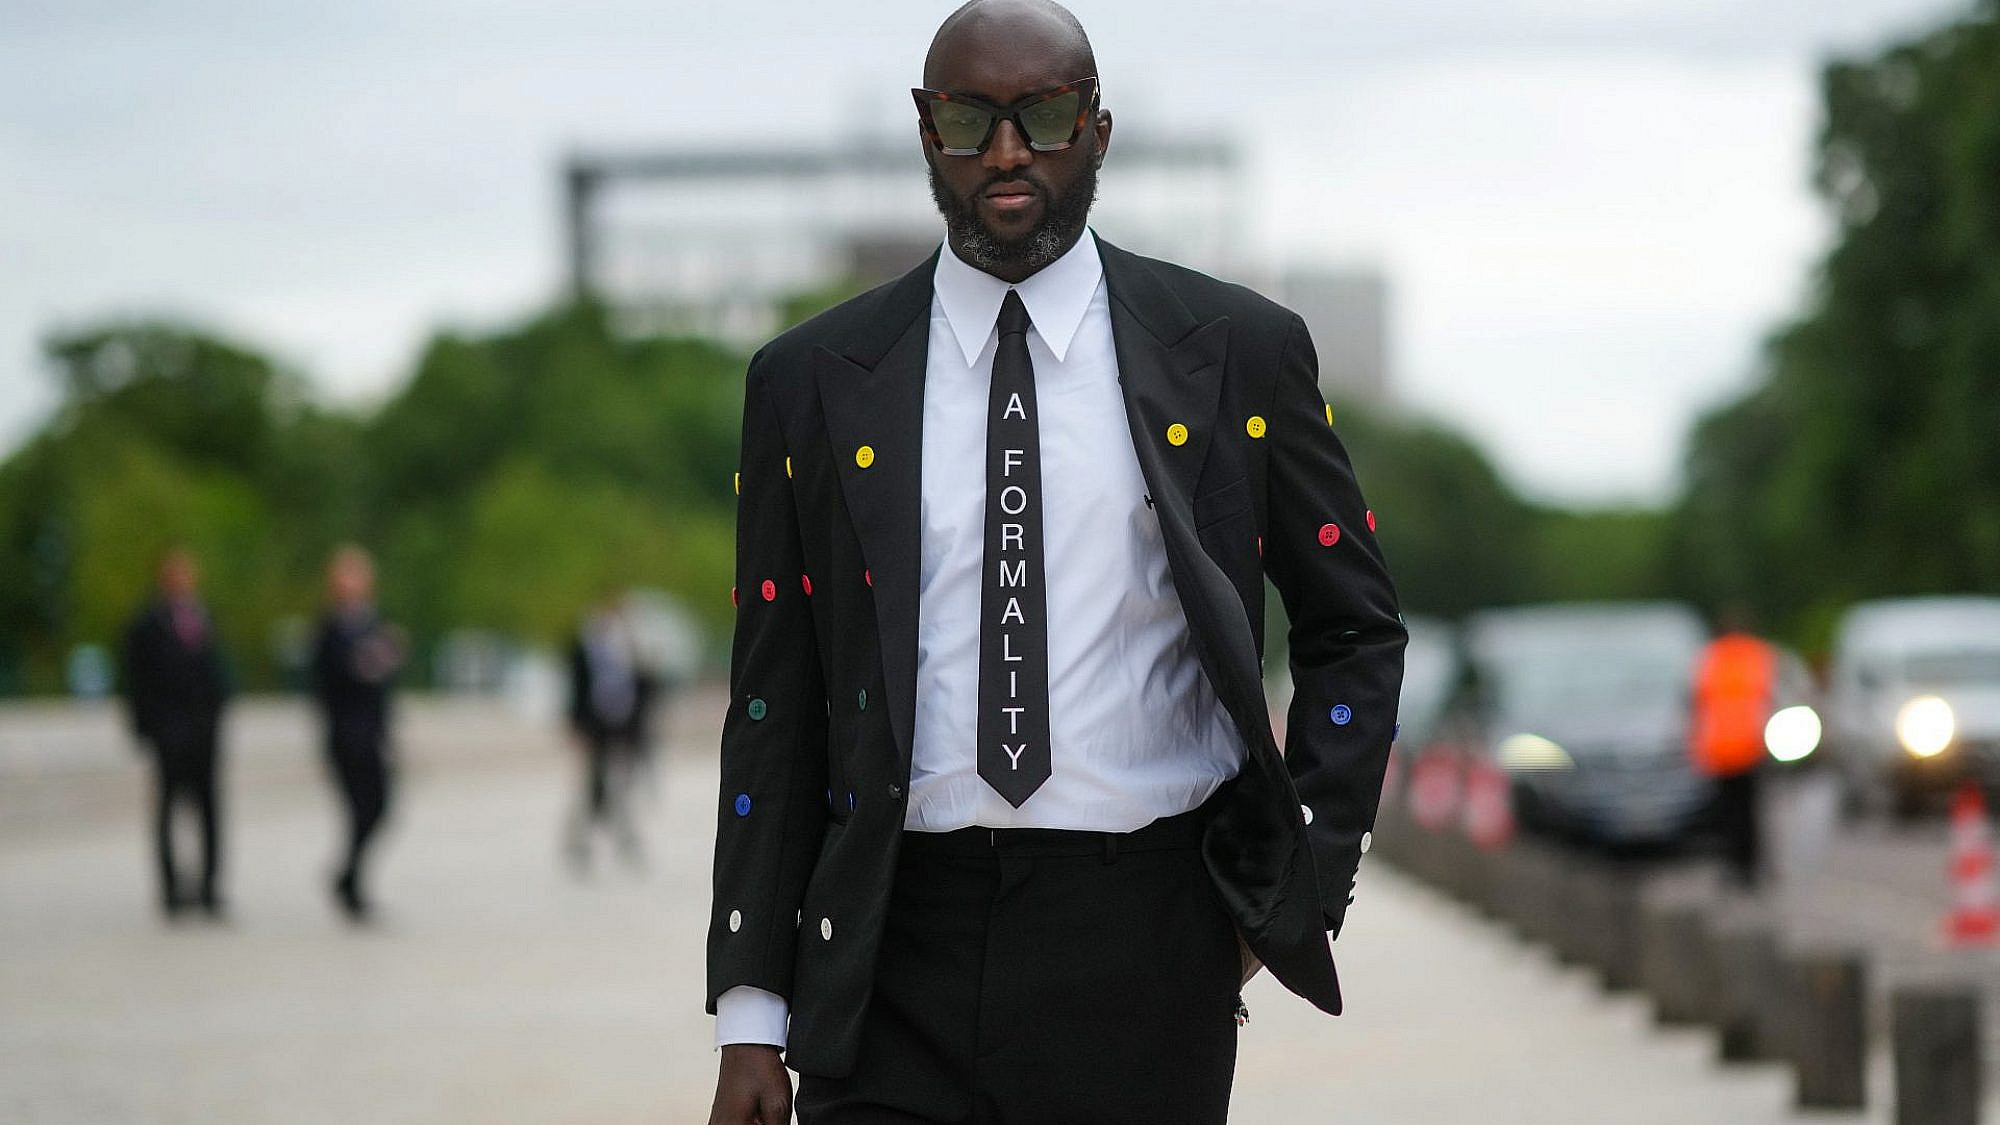 וירג'יל אבלו בשבוע האופנה בפריז, יולי 2021. ארבעה חודשים לפני מותו | צילום: Gettyimages